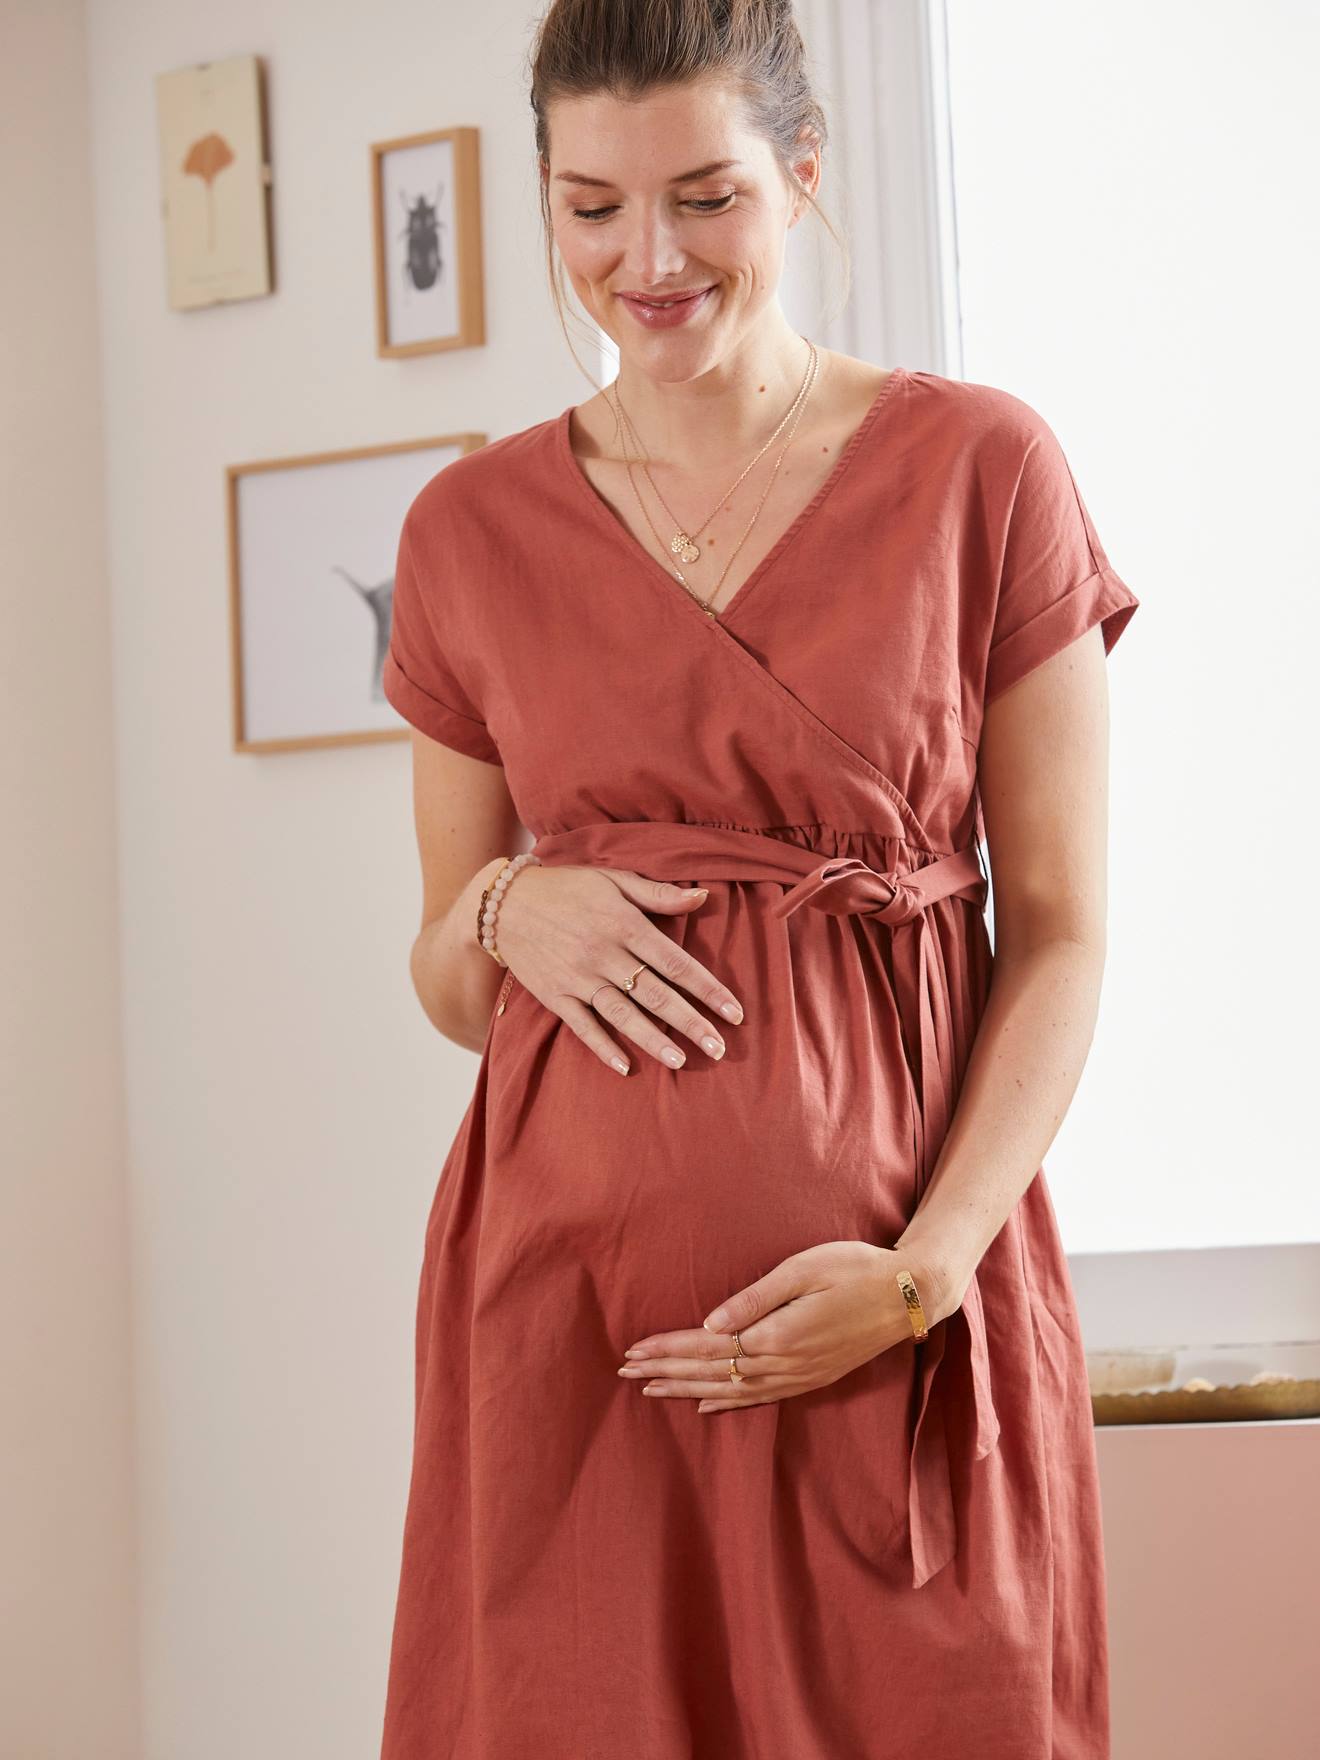 Robes de grossesse - Robes de maternité ...